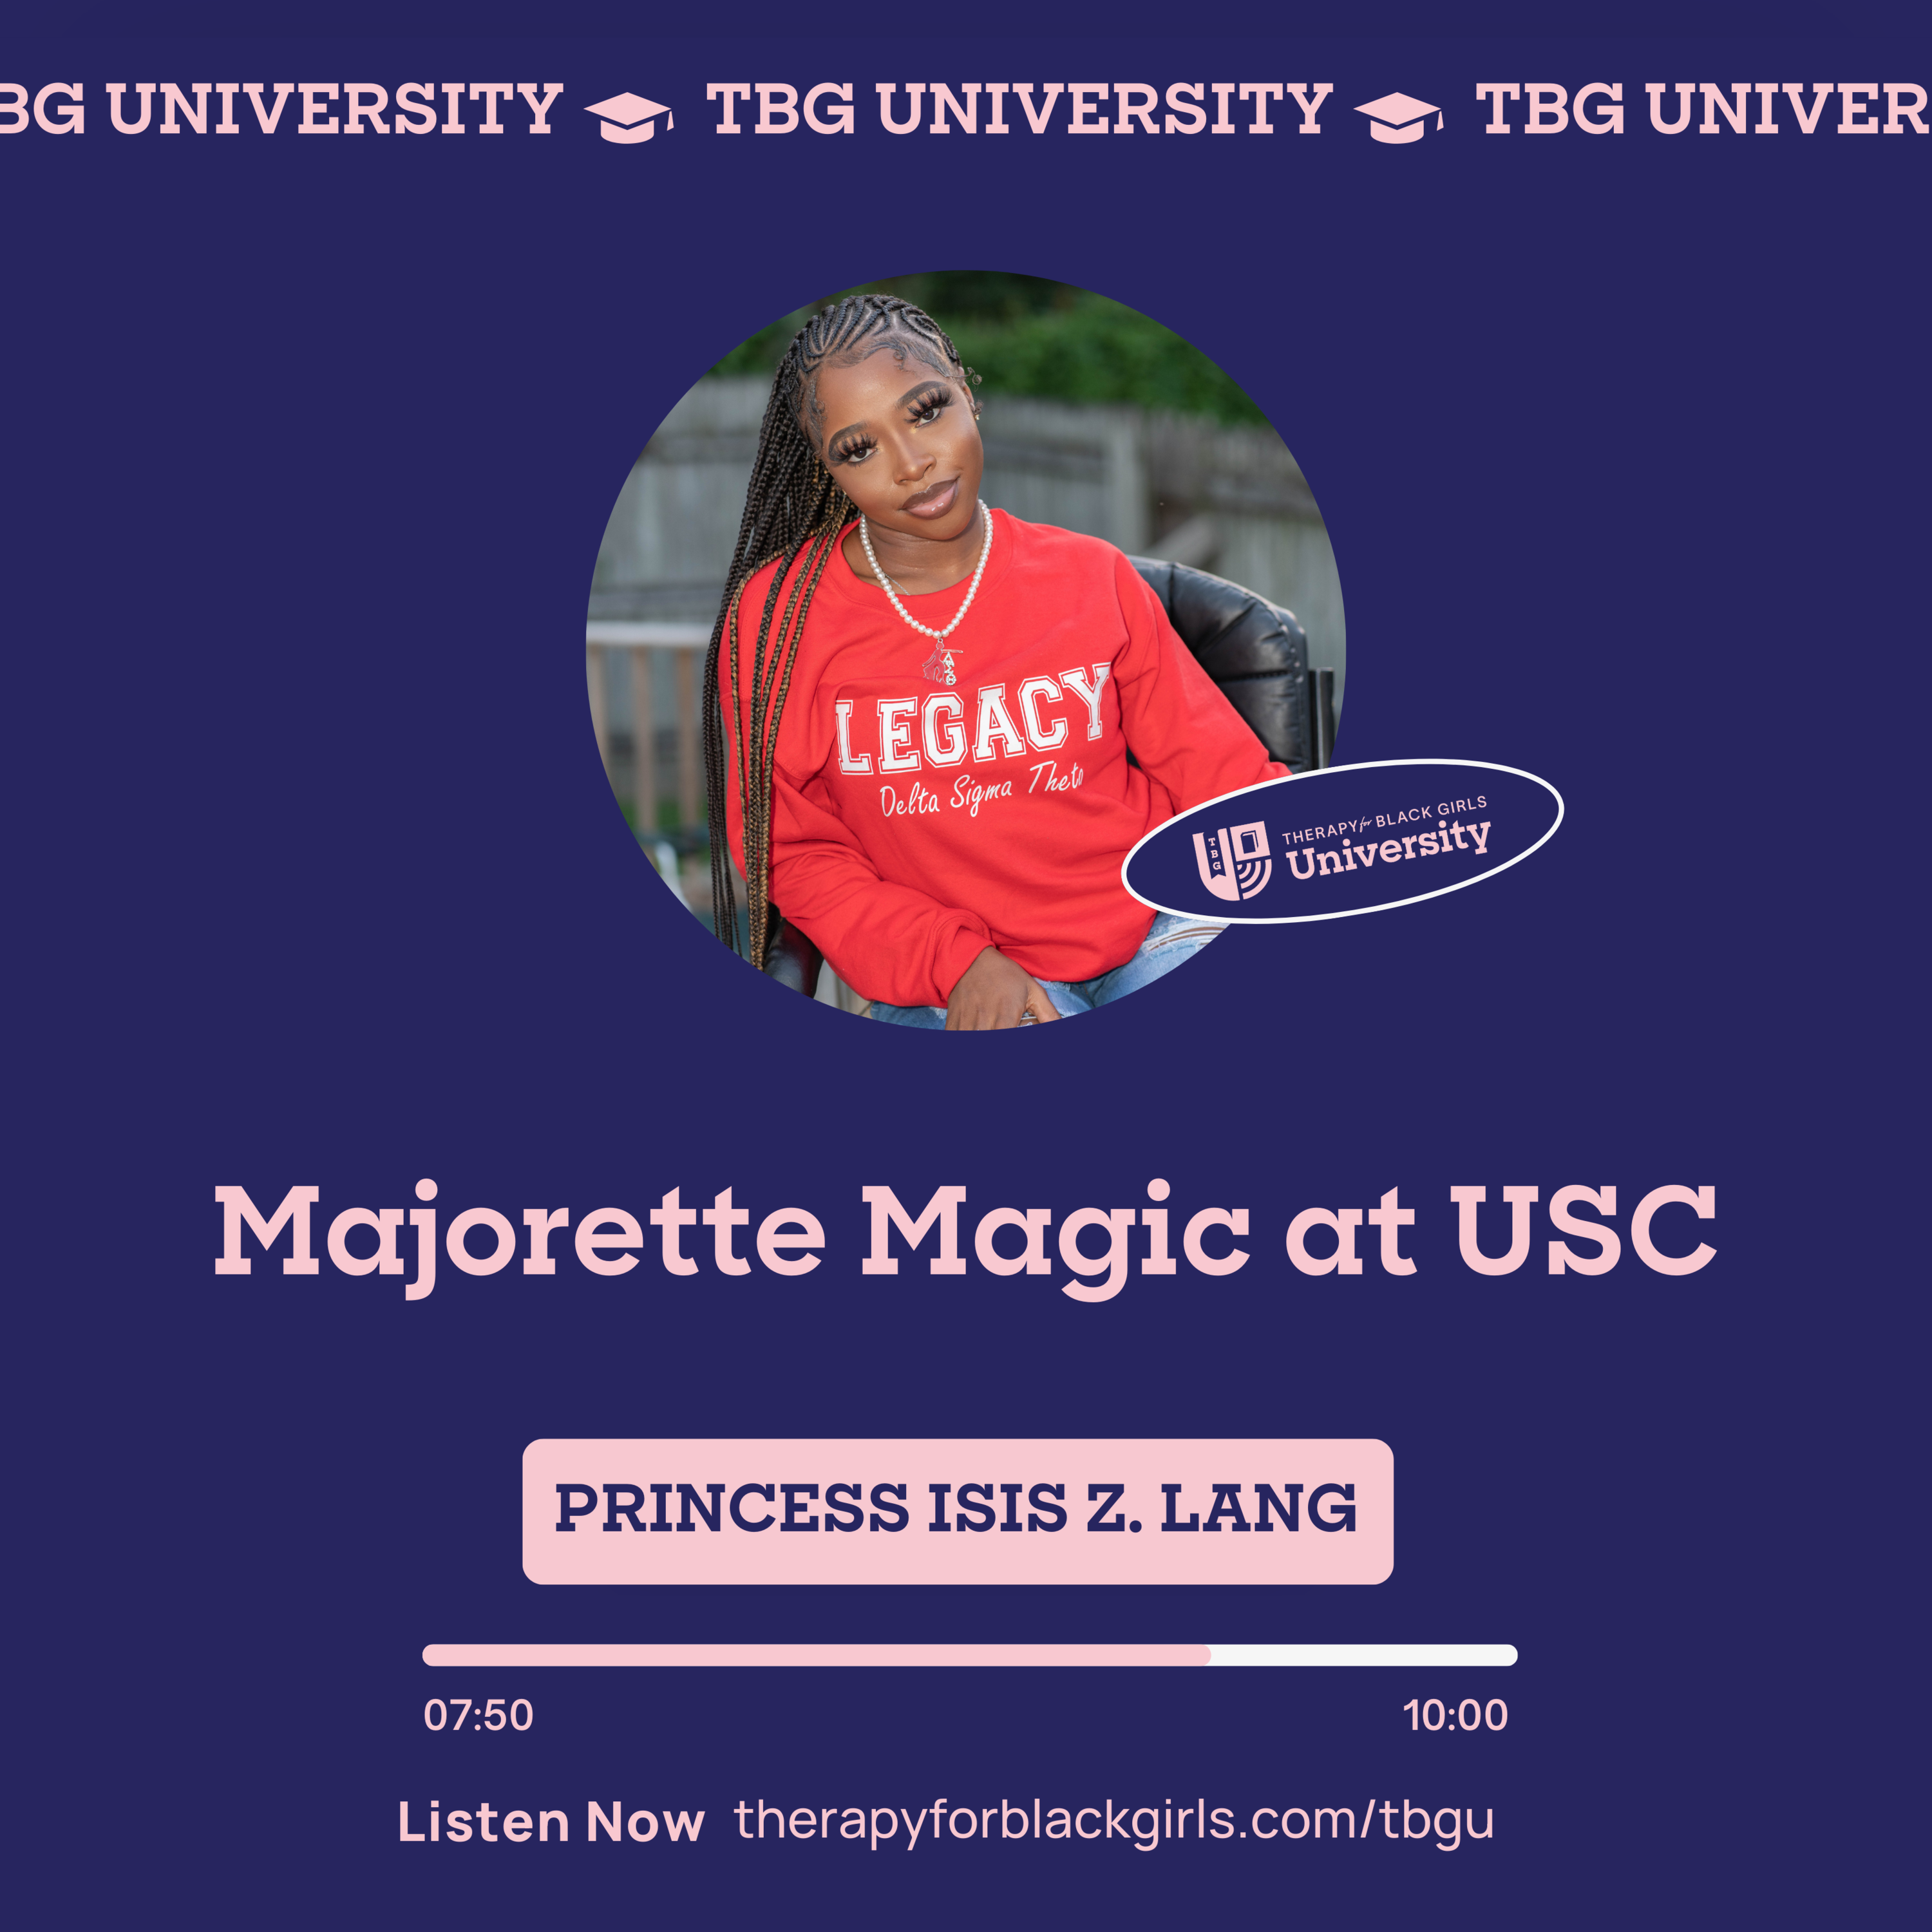 Thumbnail for "TBG University: Majorette Magic at USC".